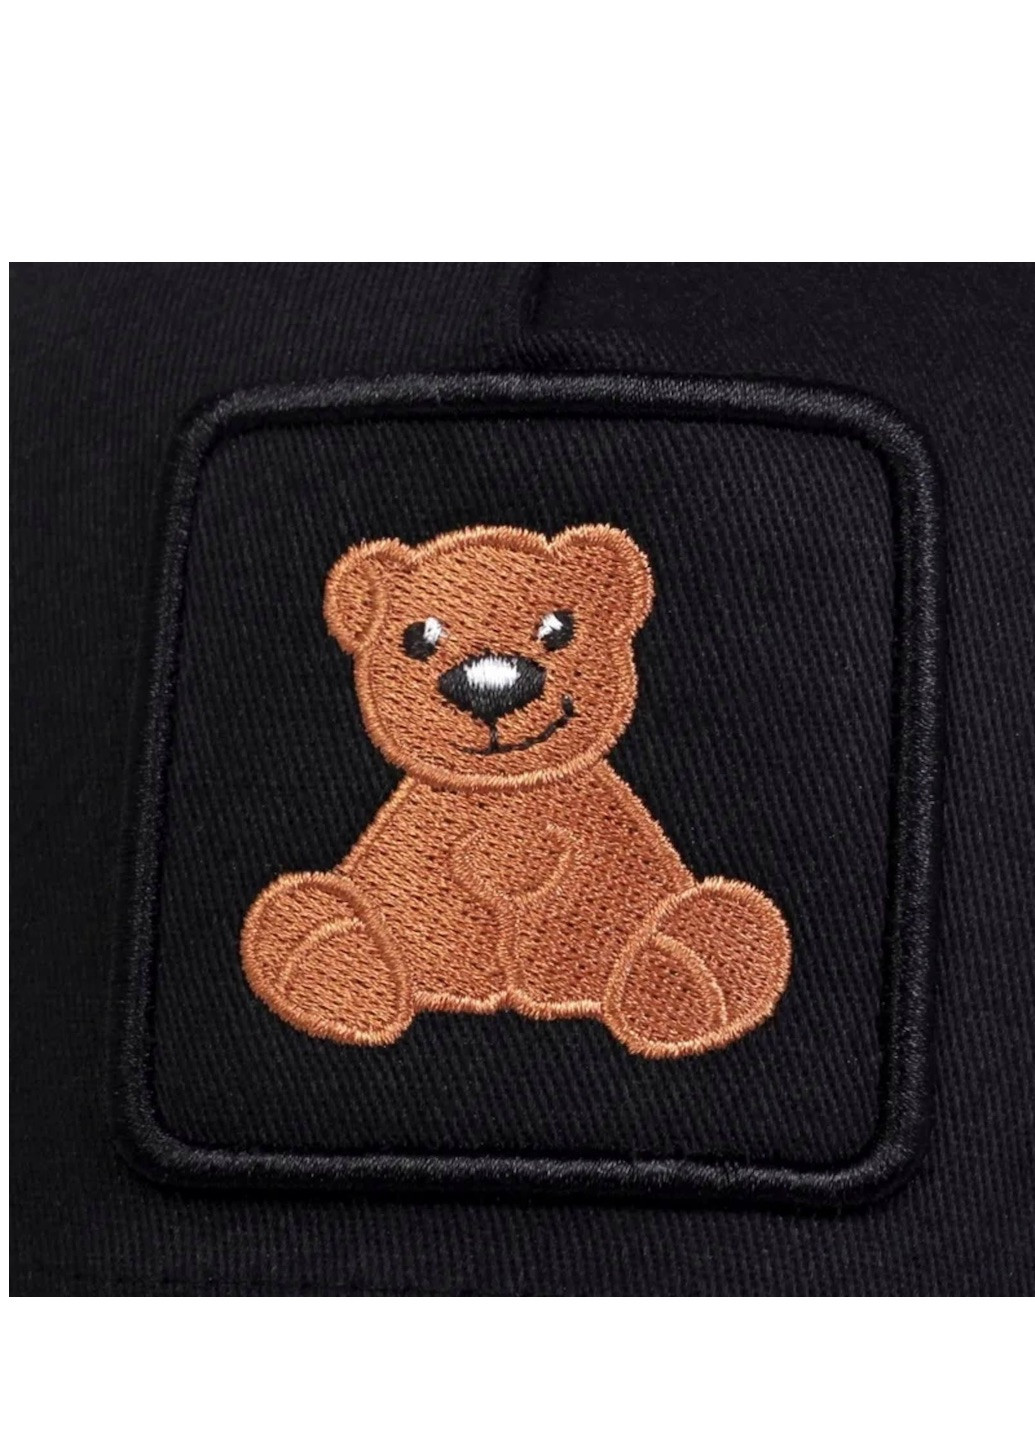 Кепка Ведмедик Тедді Teddy Bear ведмідь з сіточкою Унісекс One size Brand тракер (259040661)